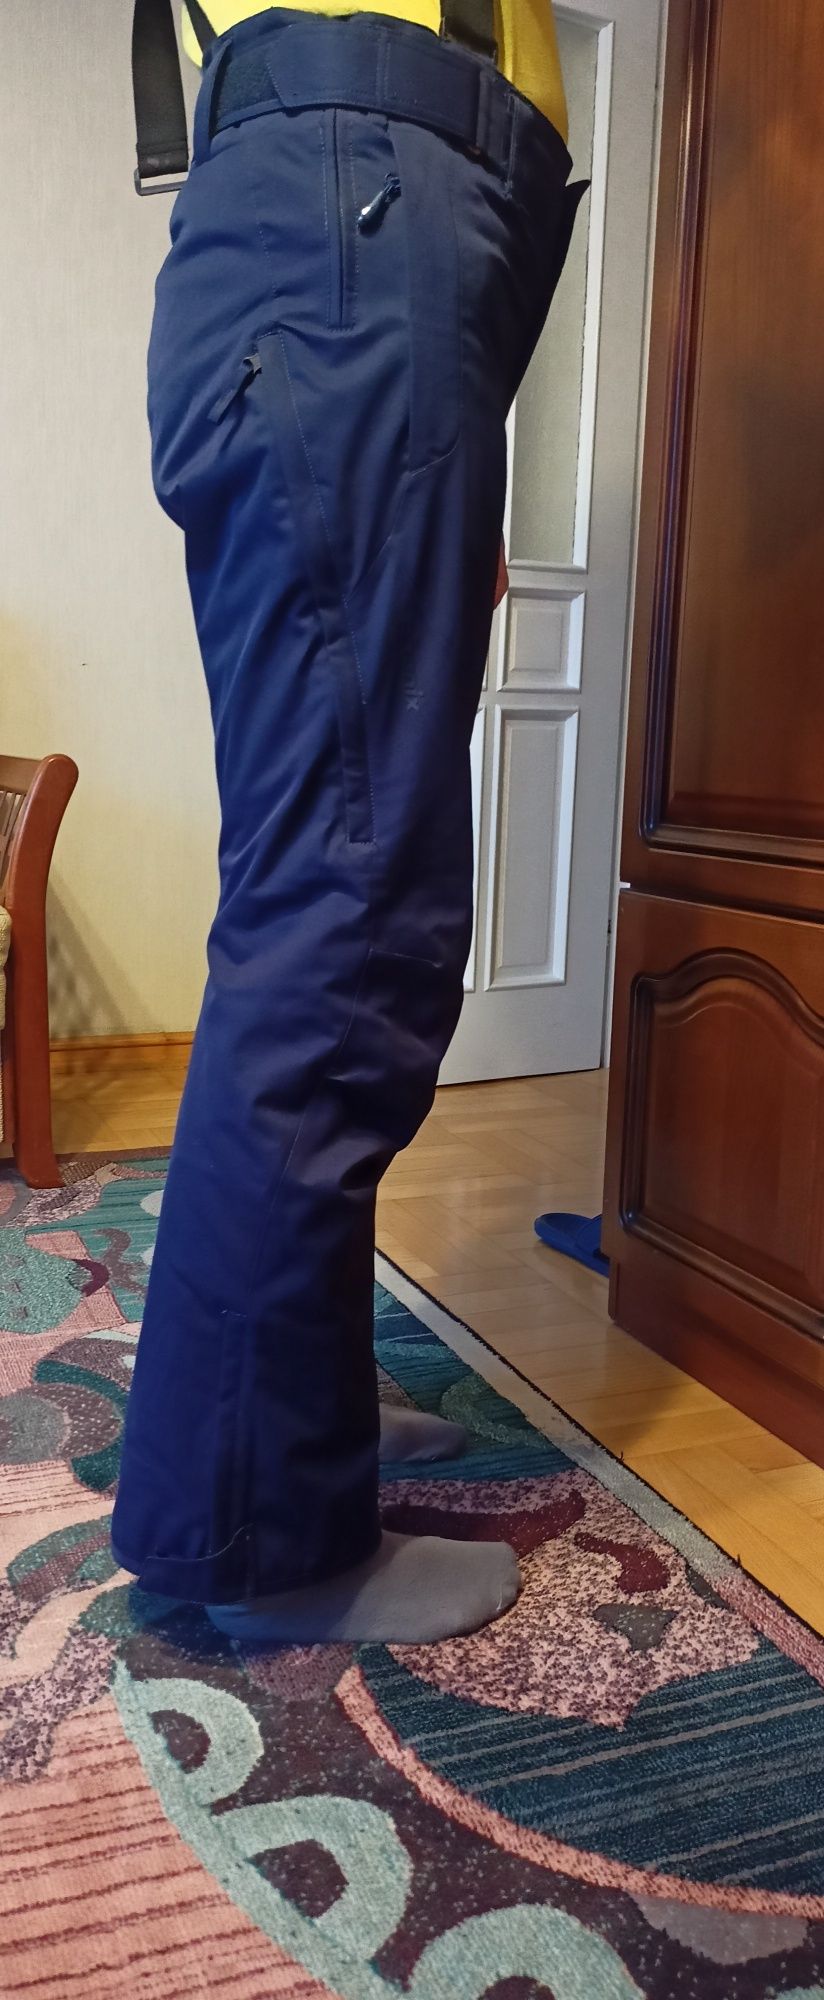 Phenix spodnie narciarskie rozmiar S